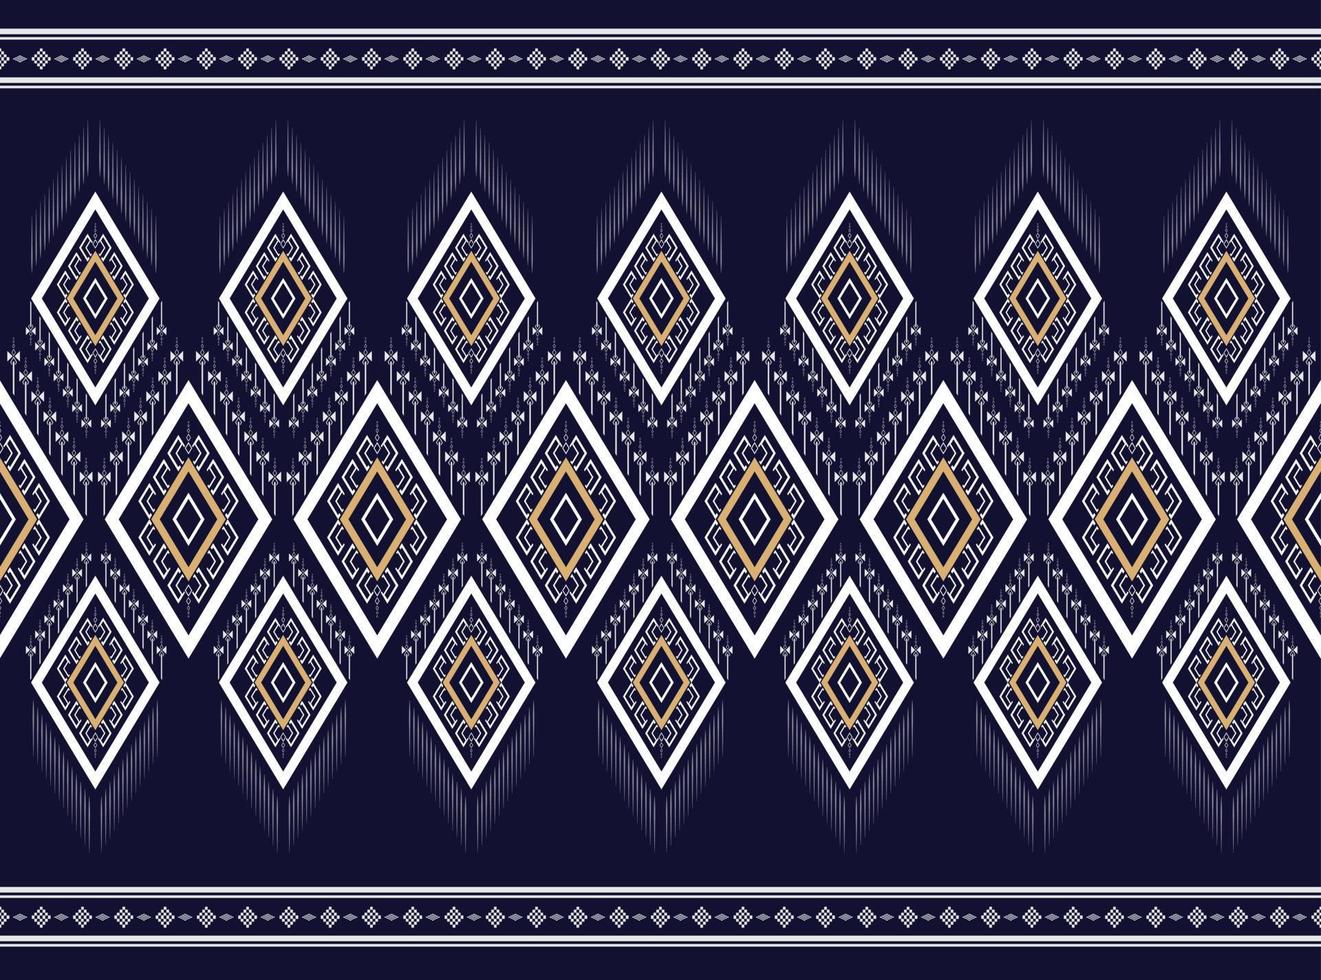 patrón étnico geométrico en blanco y negro textura tradicional para falda, alfombra, papel pintado, ropa, envoltura, batik, tela, ropa, moda, hoja de fondo blanco vector y bordado de ilustración